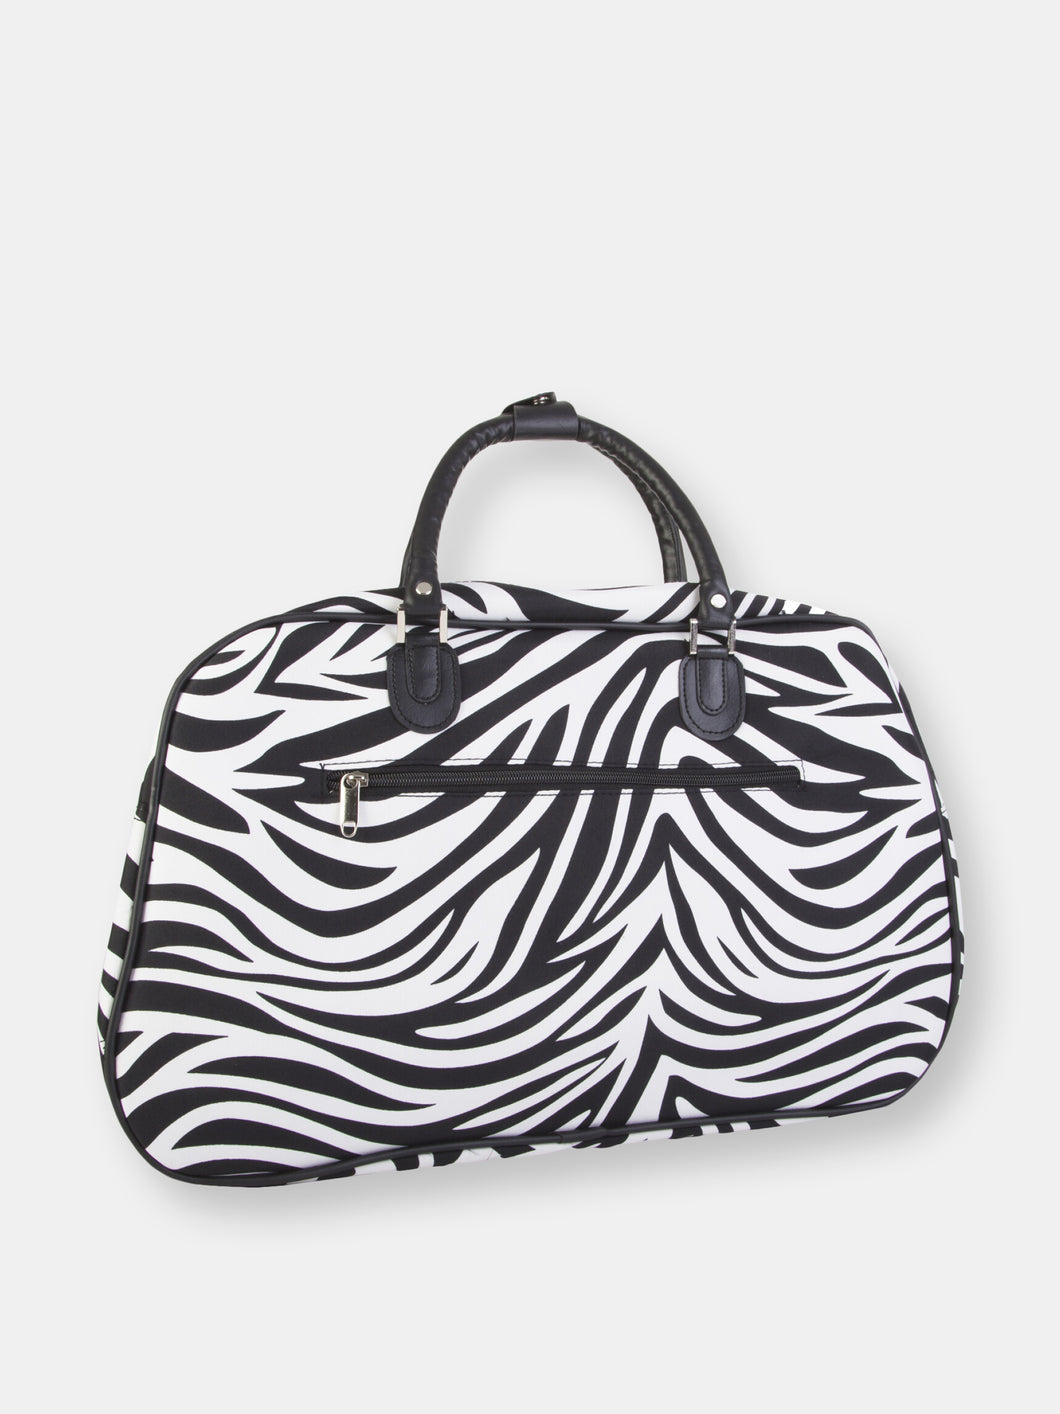 World Traveler Women’s Carry-On Overnight Weekender Bag Black and White Zebra